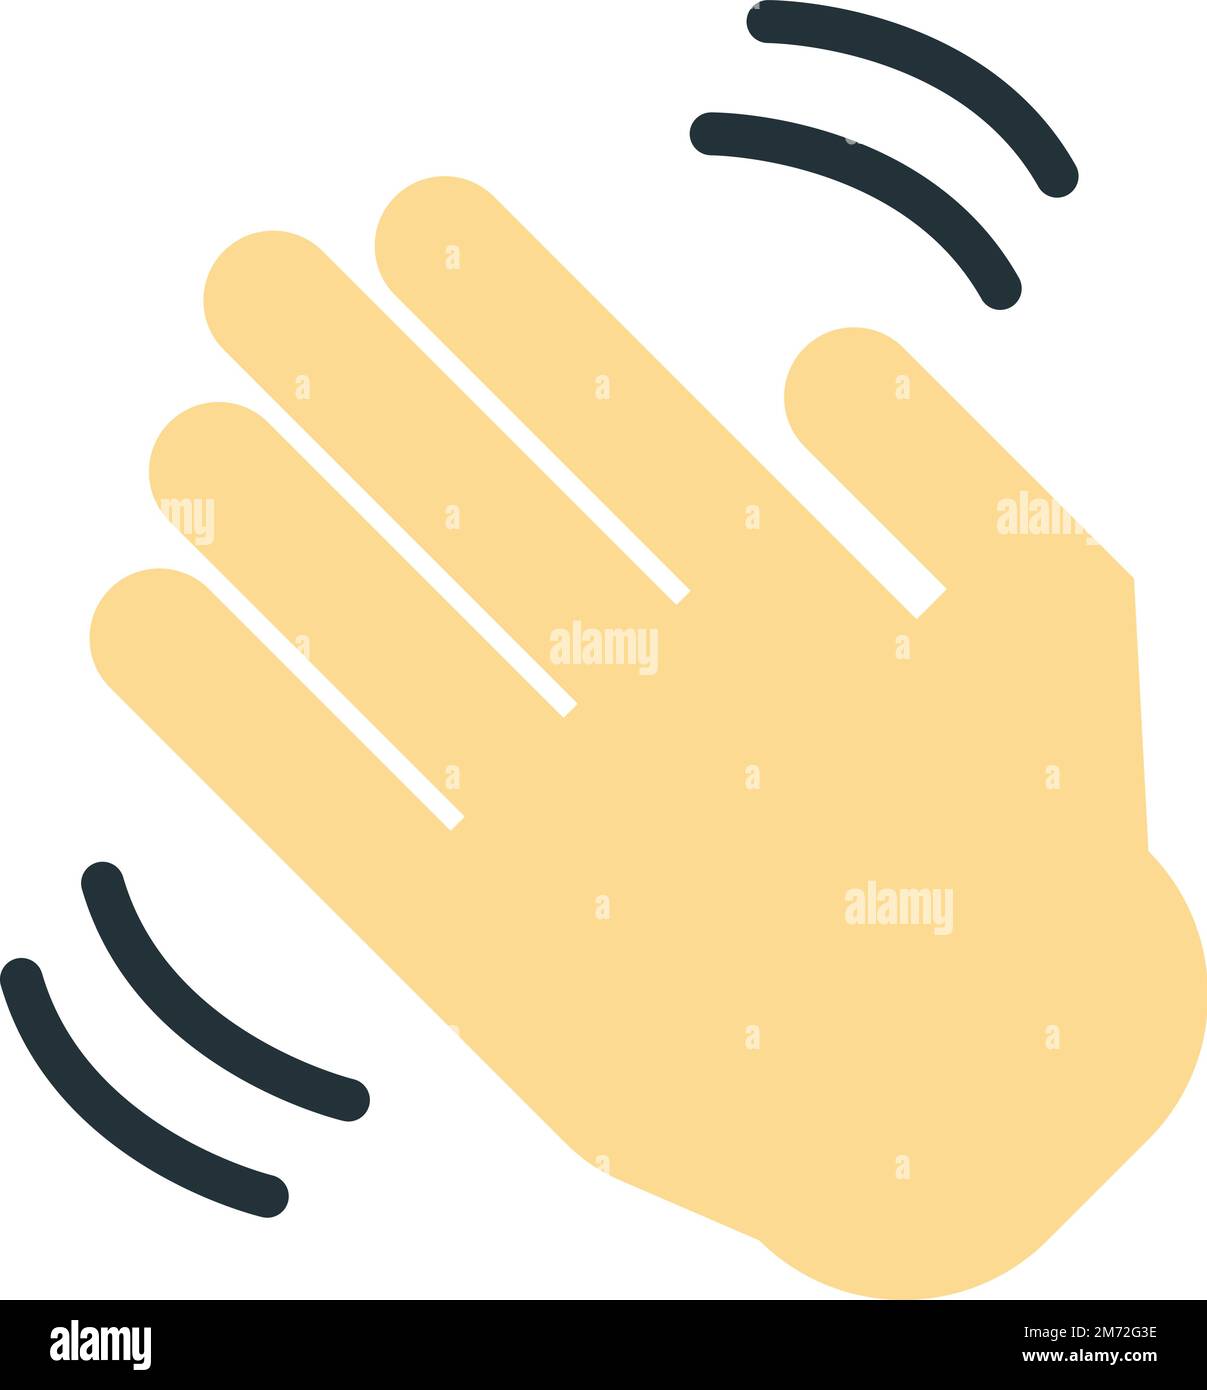 illustration de la main onduleuse dans un style minimal isolé sur l'arrière-plan Illustration de Vecteur